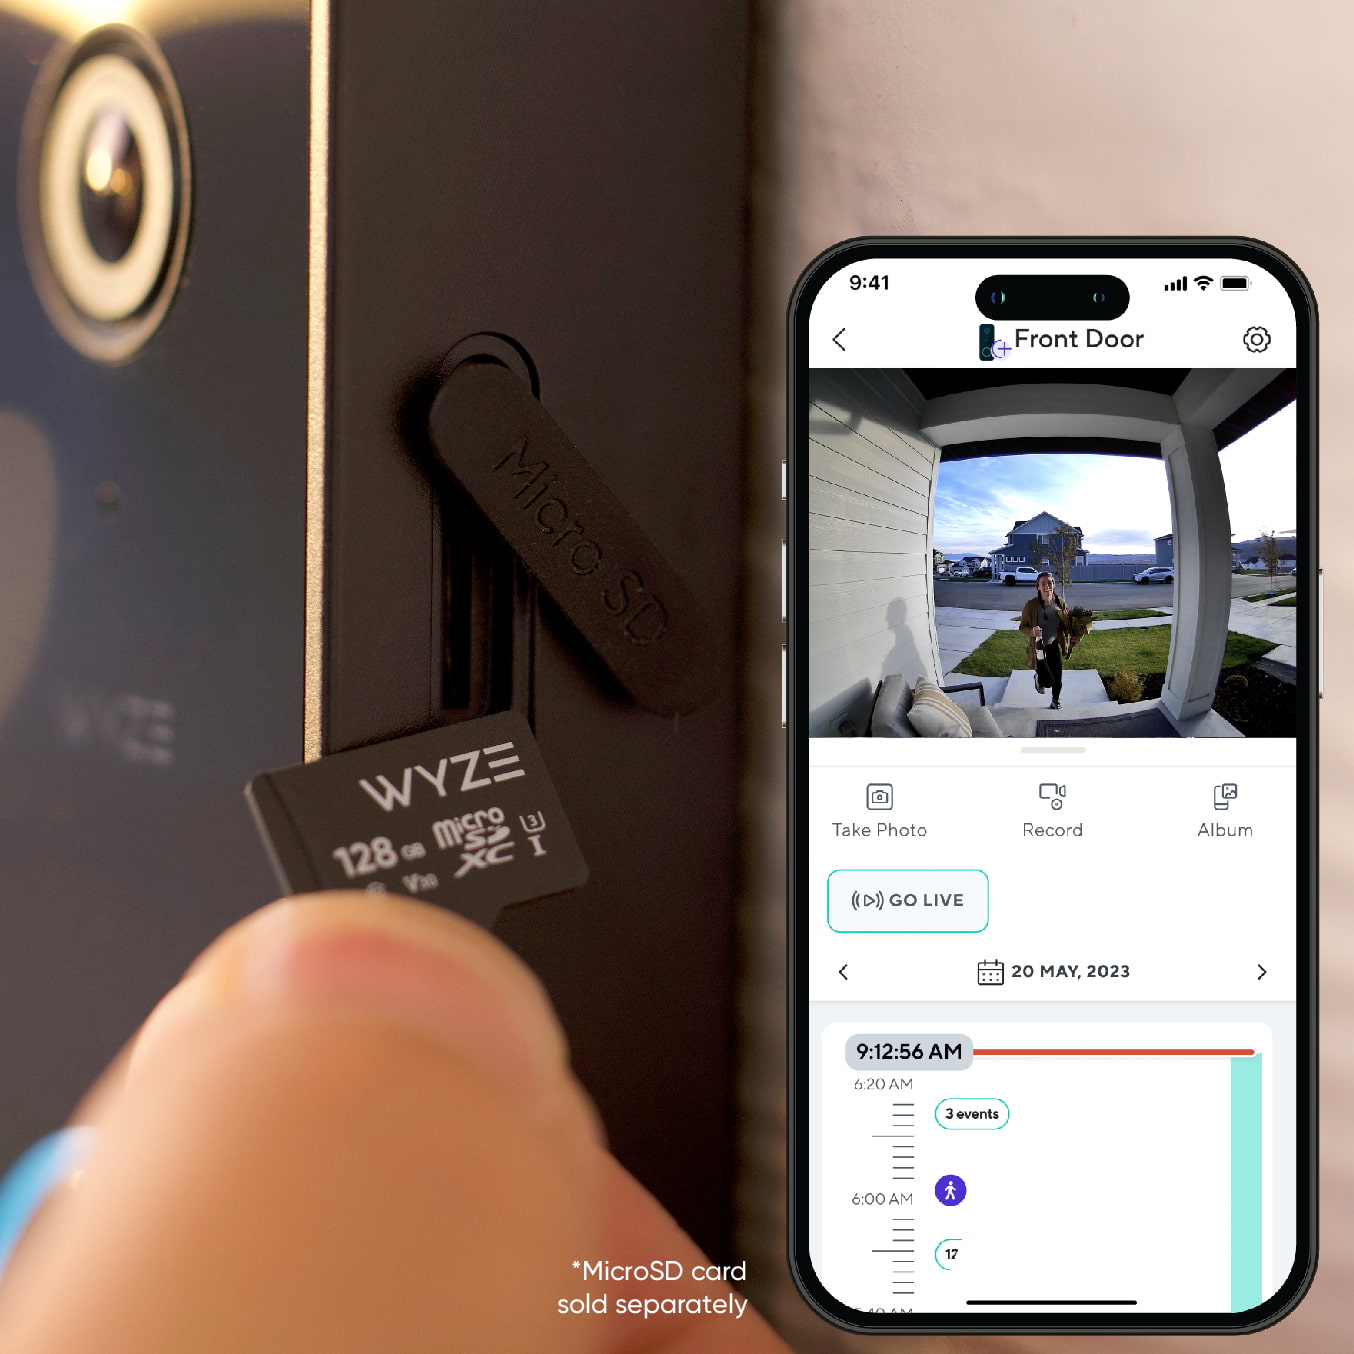 Wyze Video Doorbell v2 – Wyze Labs, Inc.